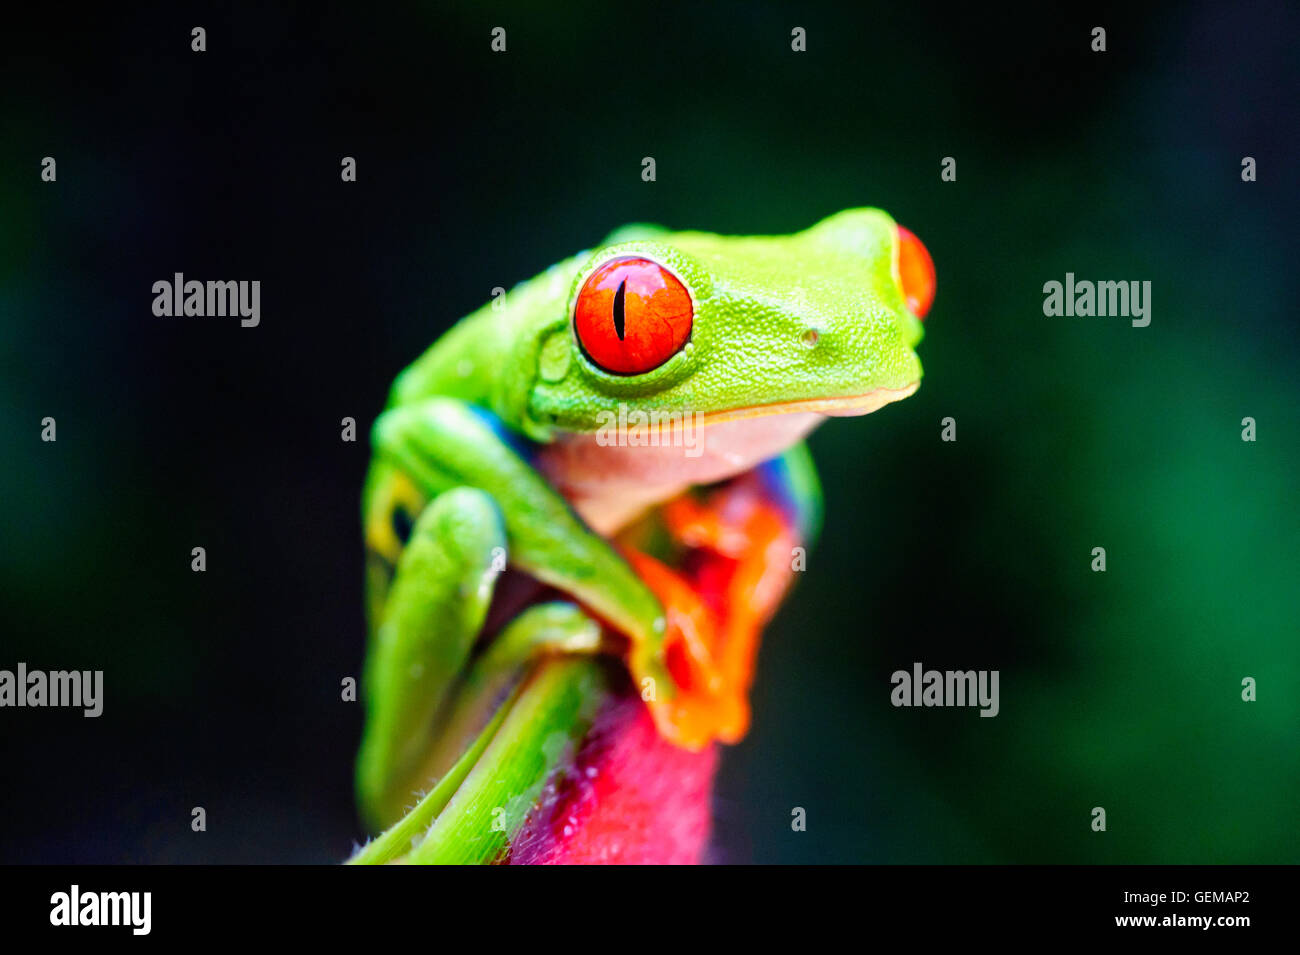 Une grenouille arboricole aux yeux rouges au Costa Rica. Banque D'Images